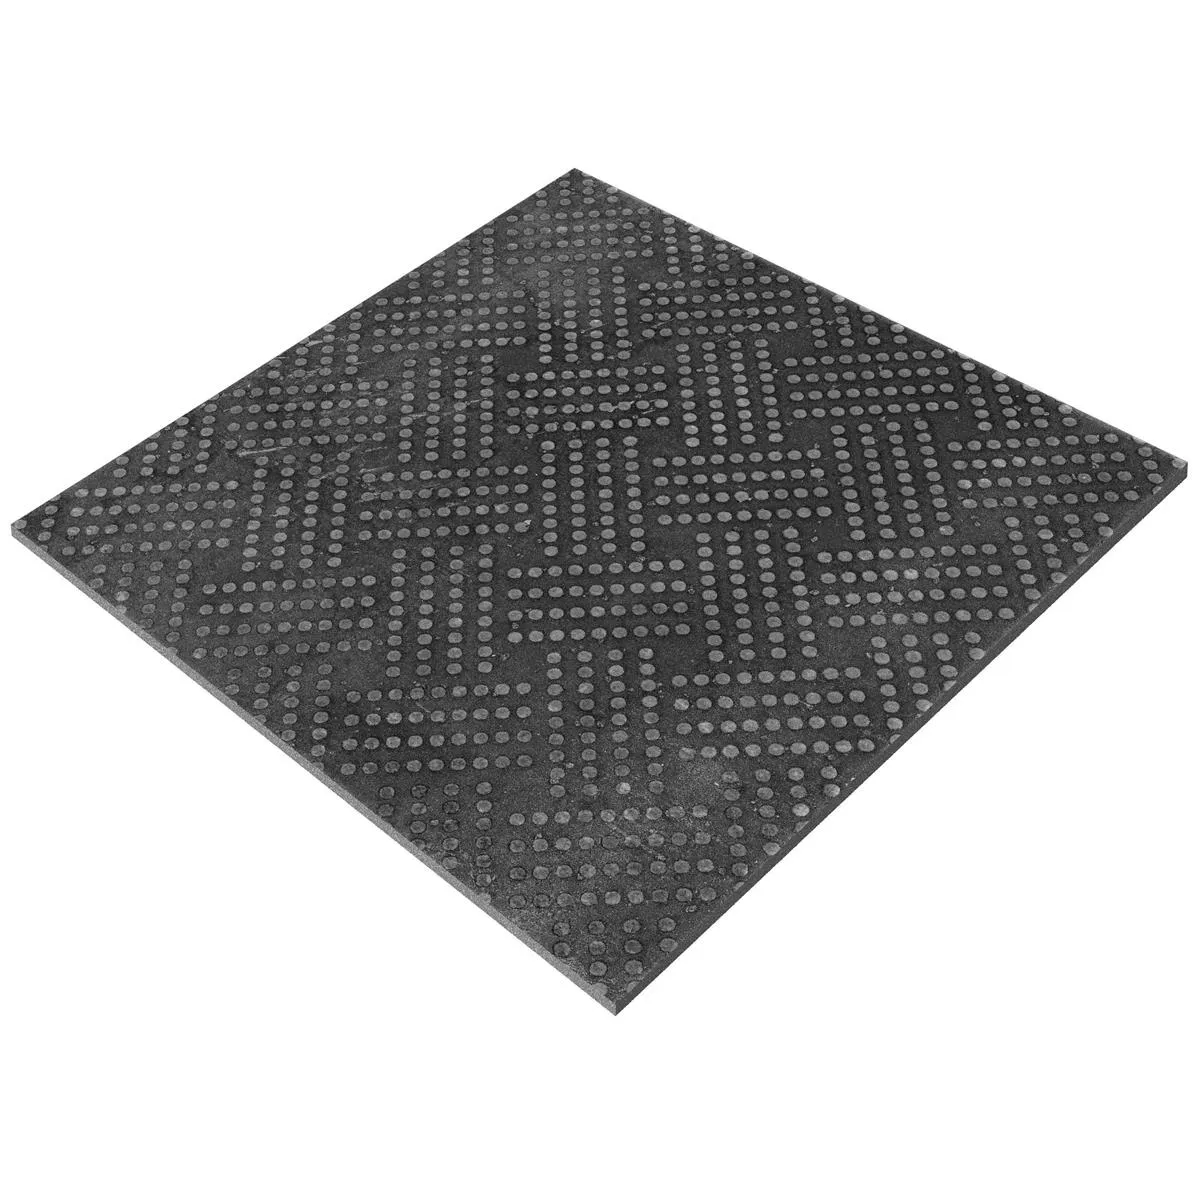 Podne Pločice Chicago Imitacija Metala Antracit R9 - 18,5x18,5cm Pattern 1